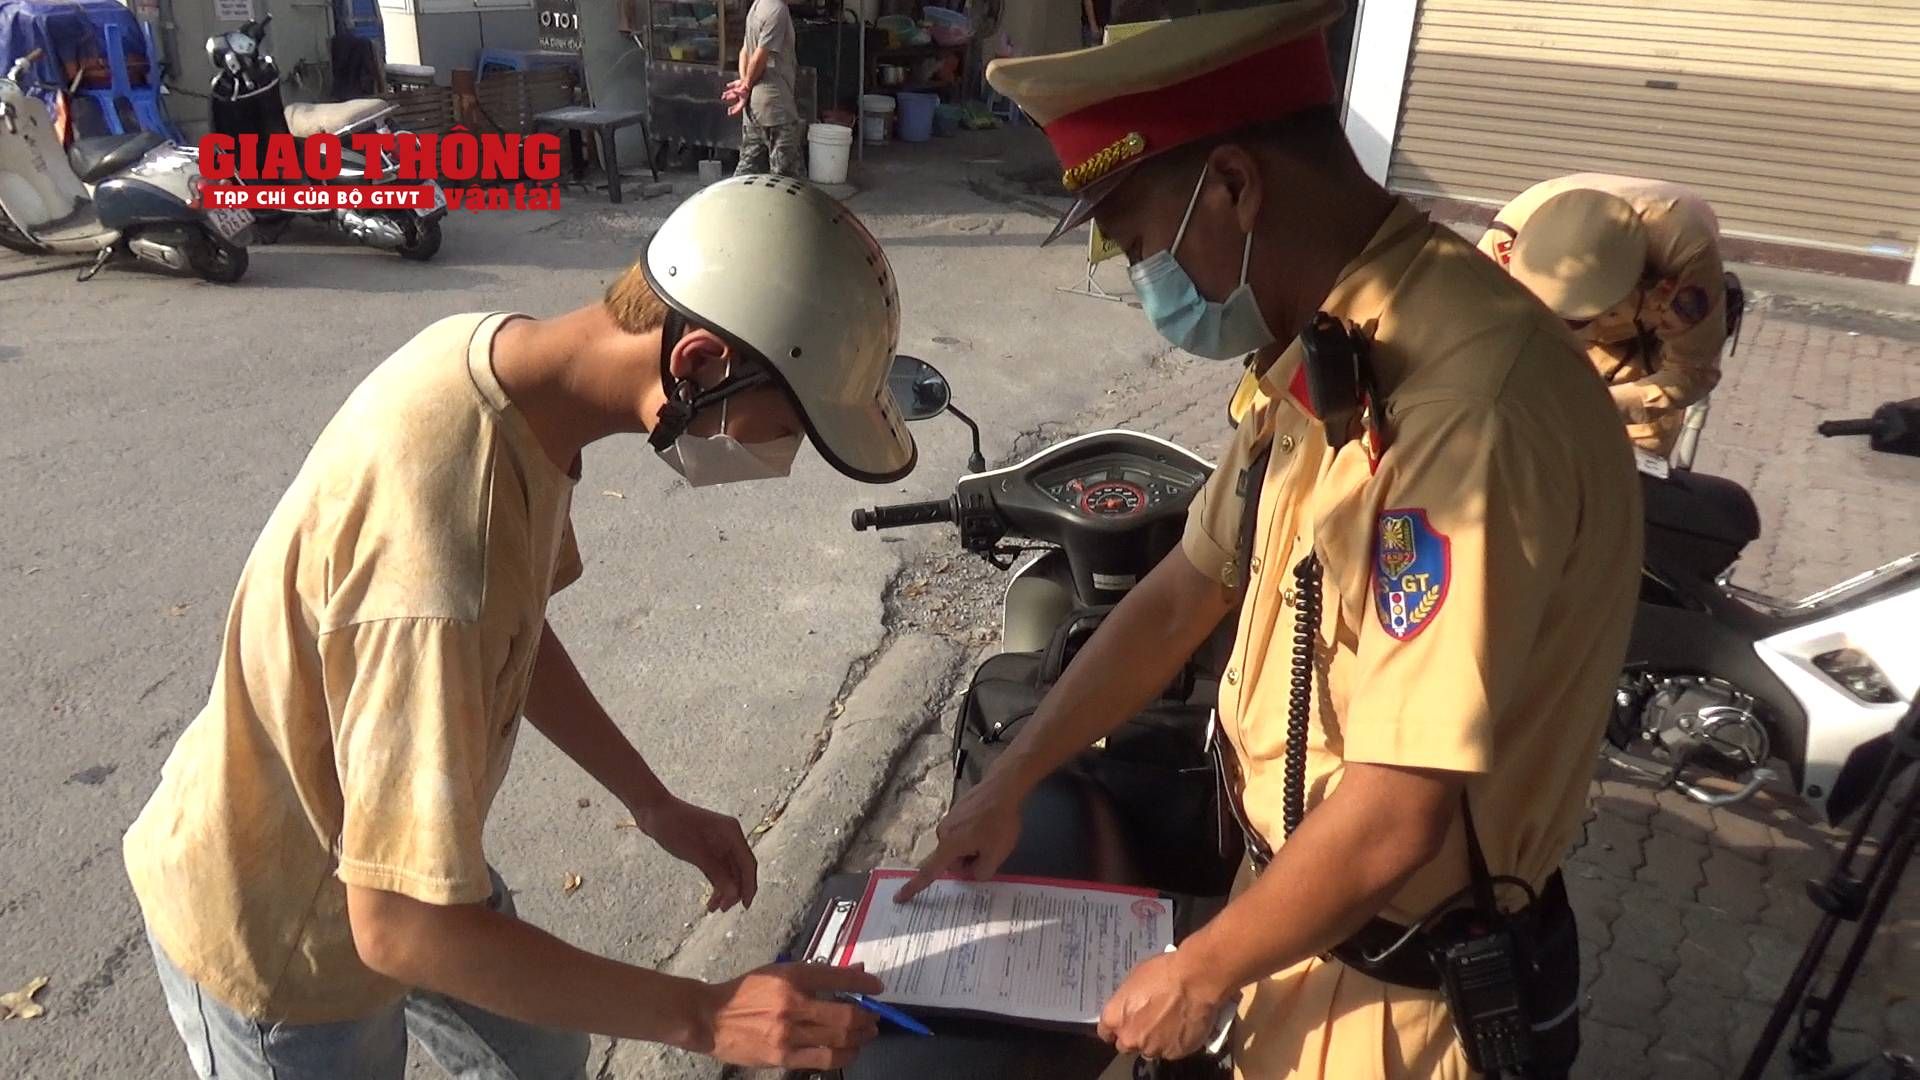 Chùm ảnh: Cảnh sát “đón lõng” xử phạt người đi xe máy ngược chiều ở Hà Nội